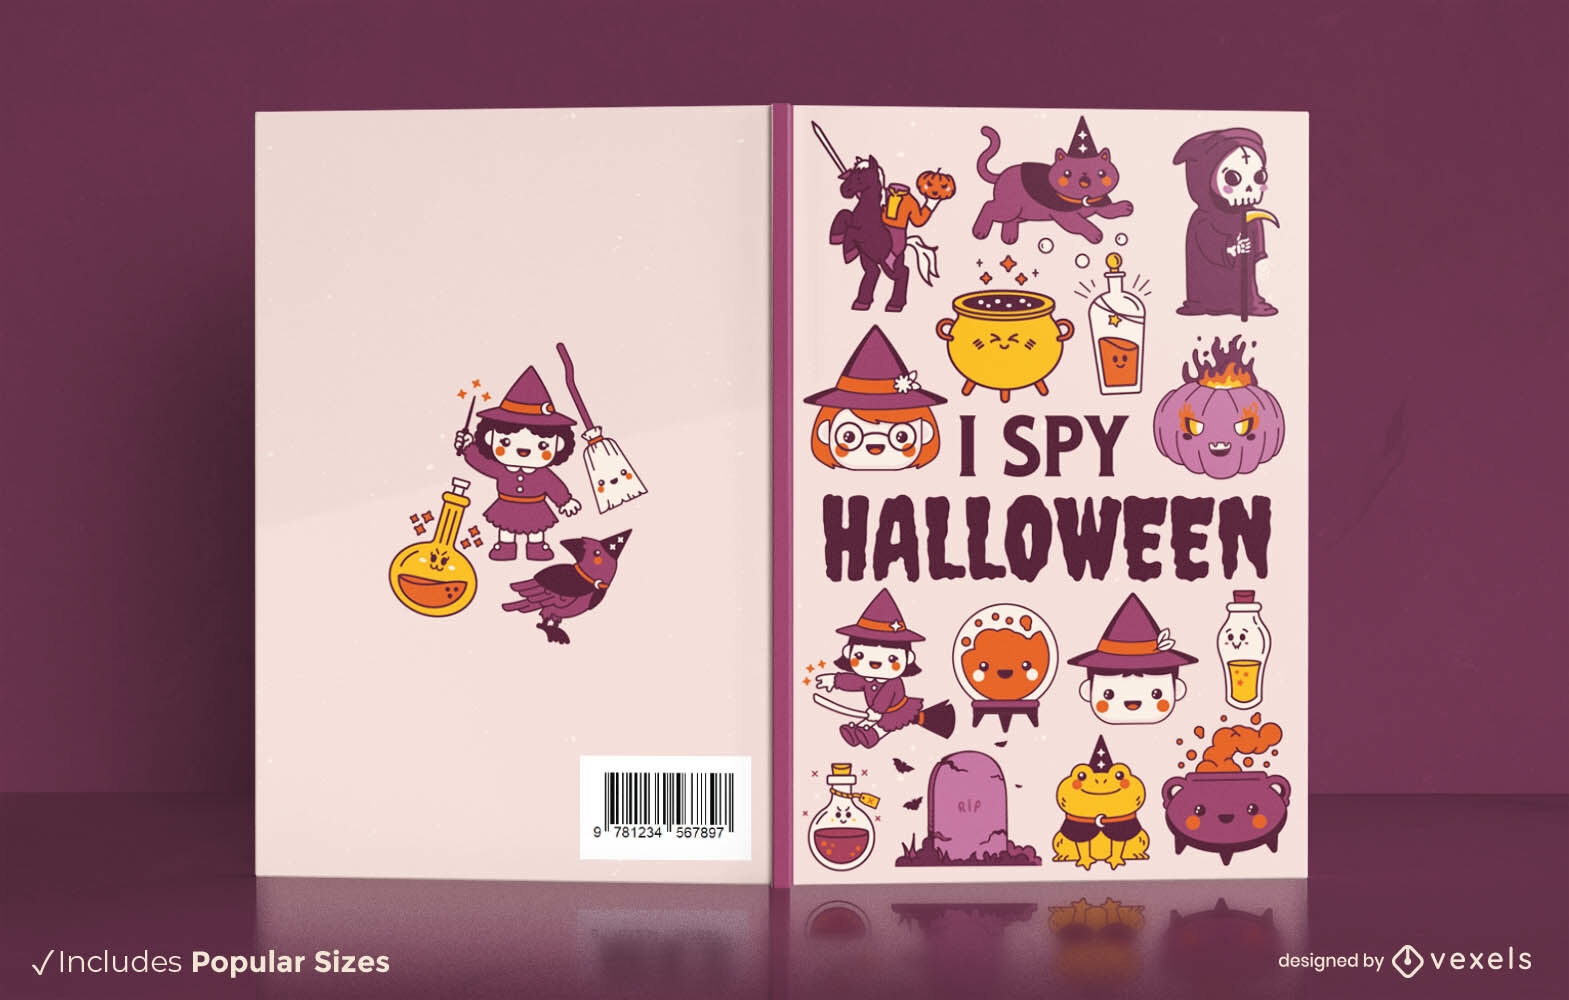 Eu espio o design da capa do livro de Halloween